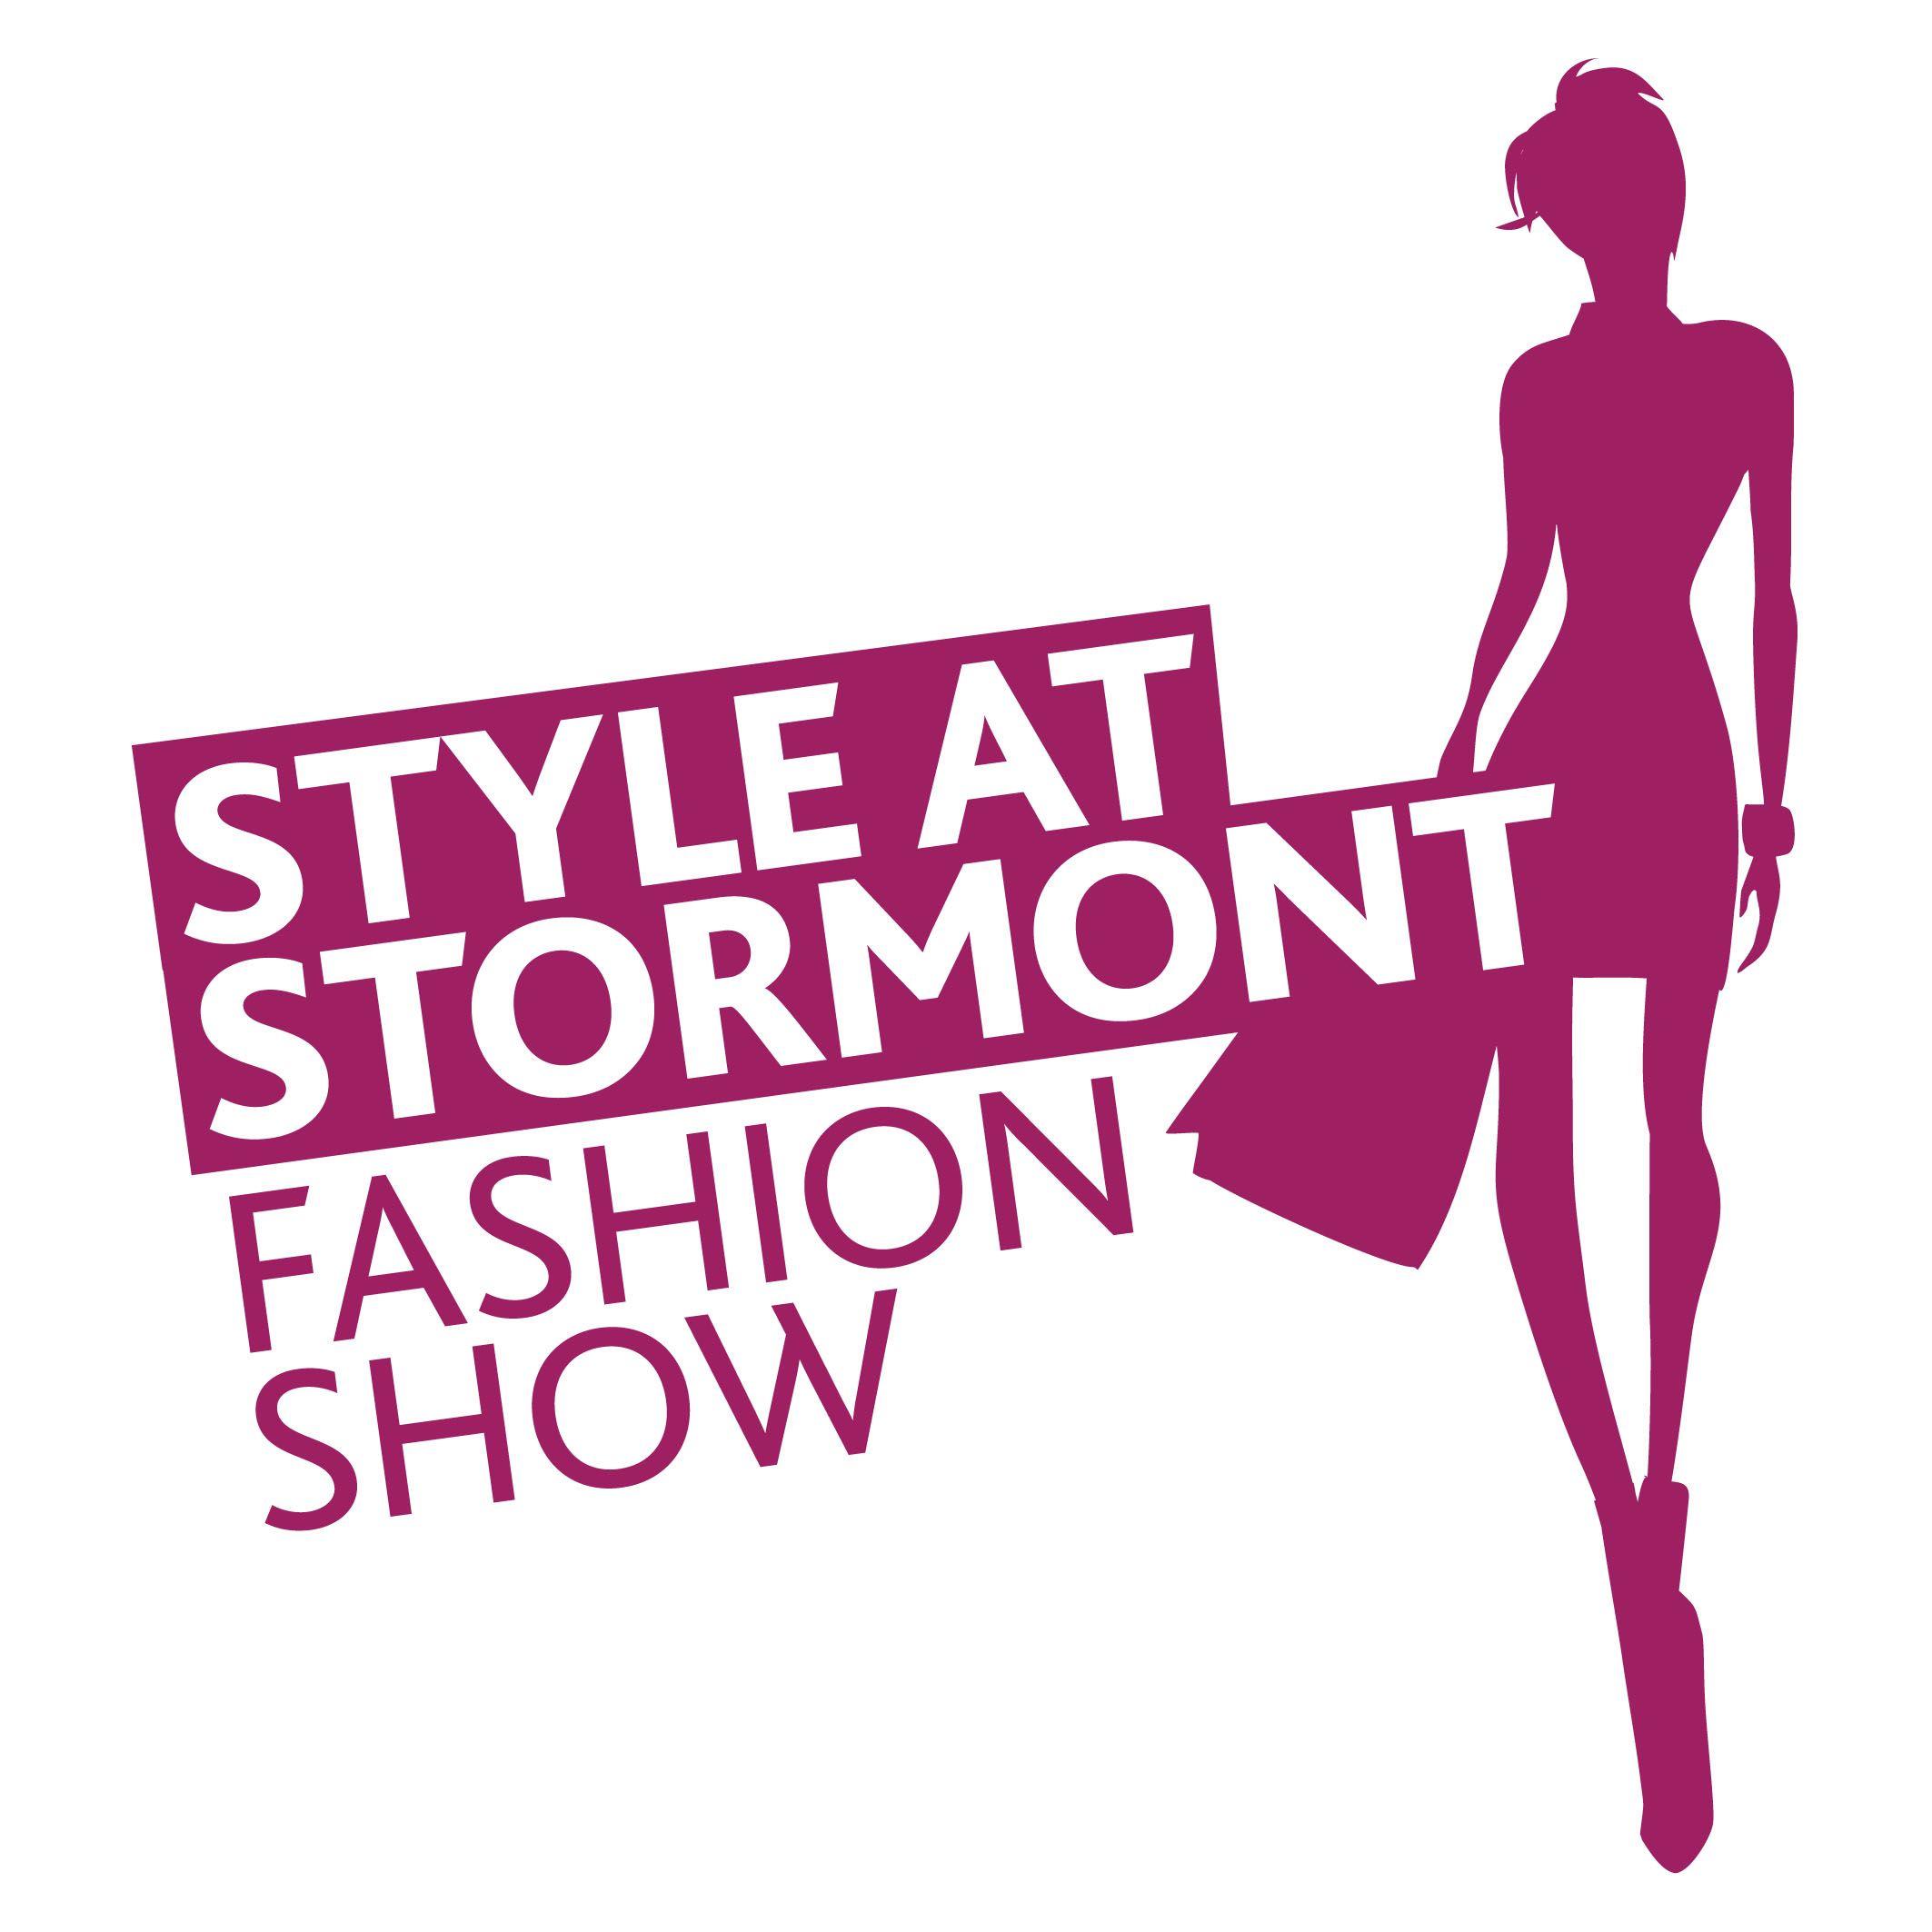 Fashion Show Logo - Fashion Show |